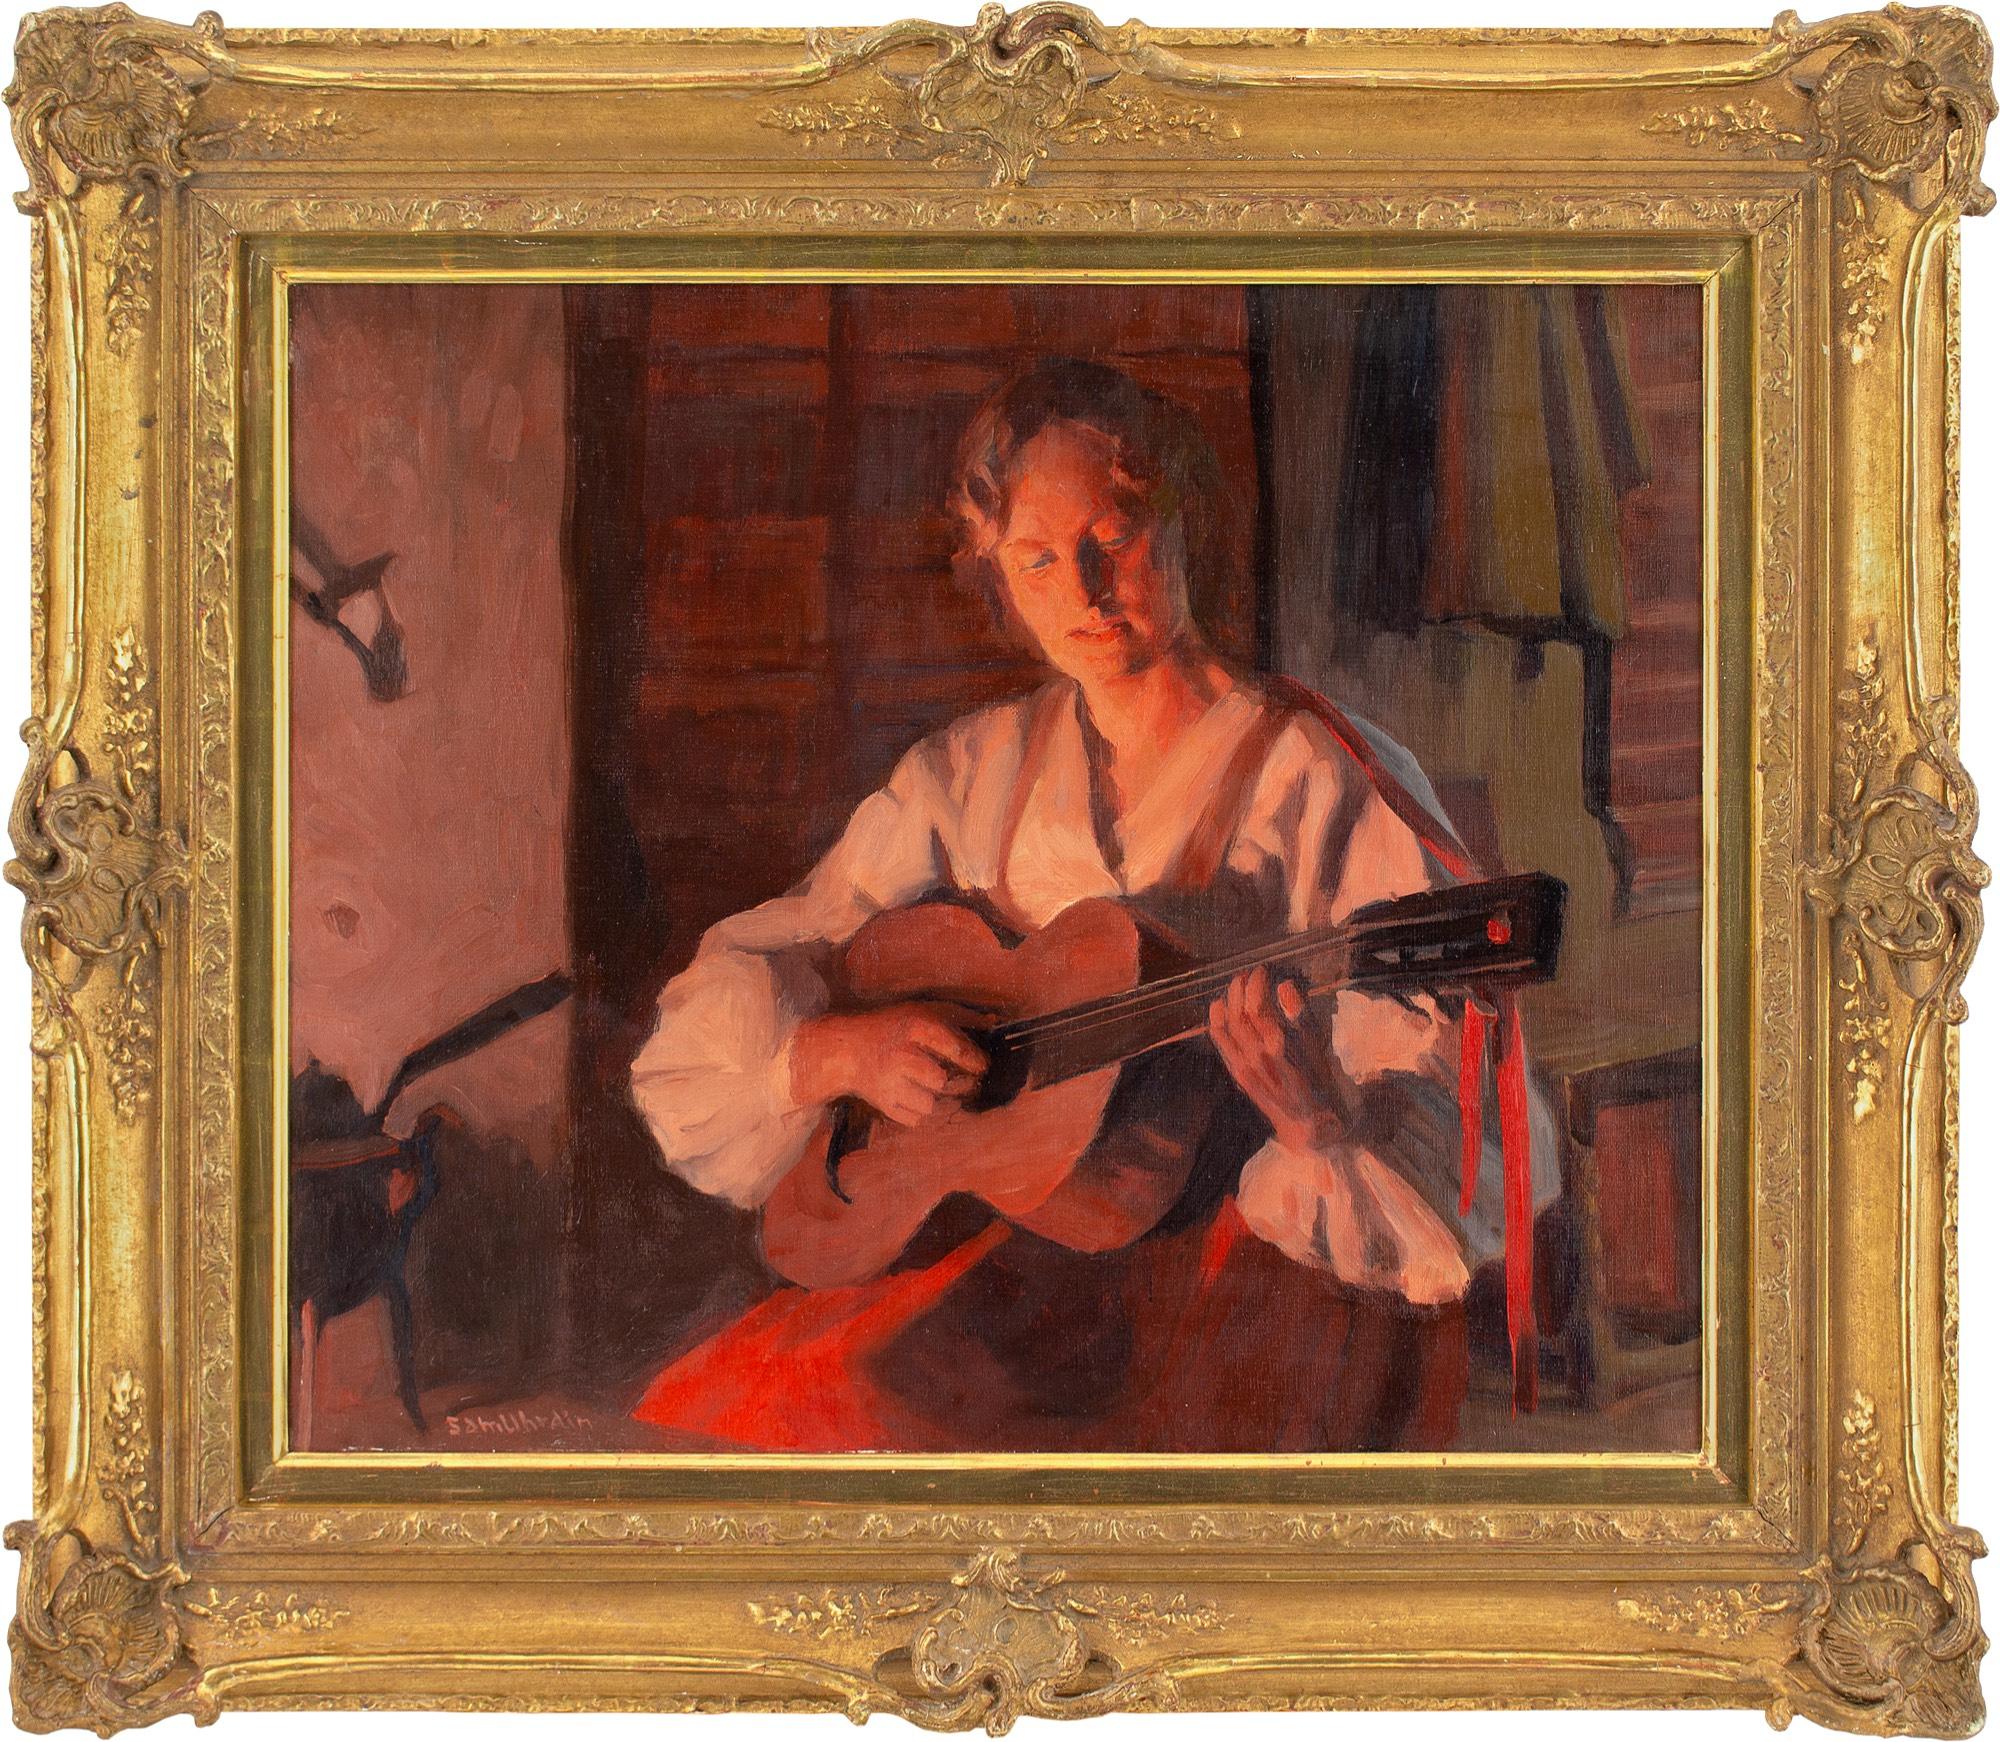 Dieses schöne Ölgemälde des schwedischen Künstlers Sam Uhrdin (1886-1964) aus der Mitte des 20. Jahrhunderts zeigt eine Gitarre spielende Frau in einem sanft beleuchteten Raum in der Dämmerung.

In einem warmen Licht, das von einem Kamin in der